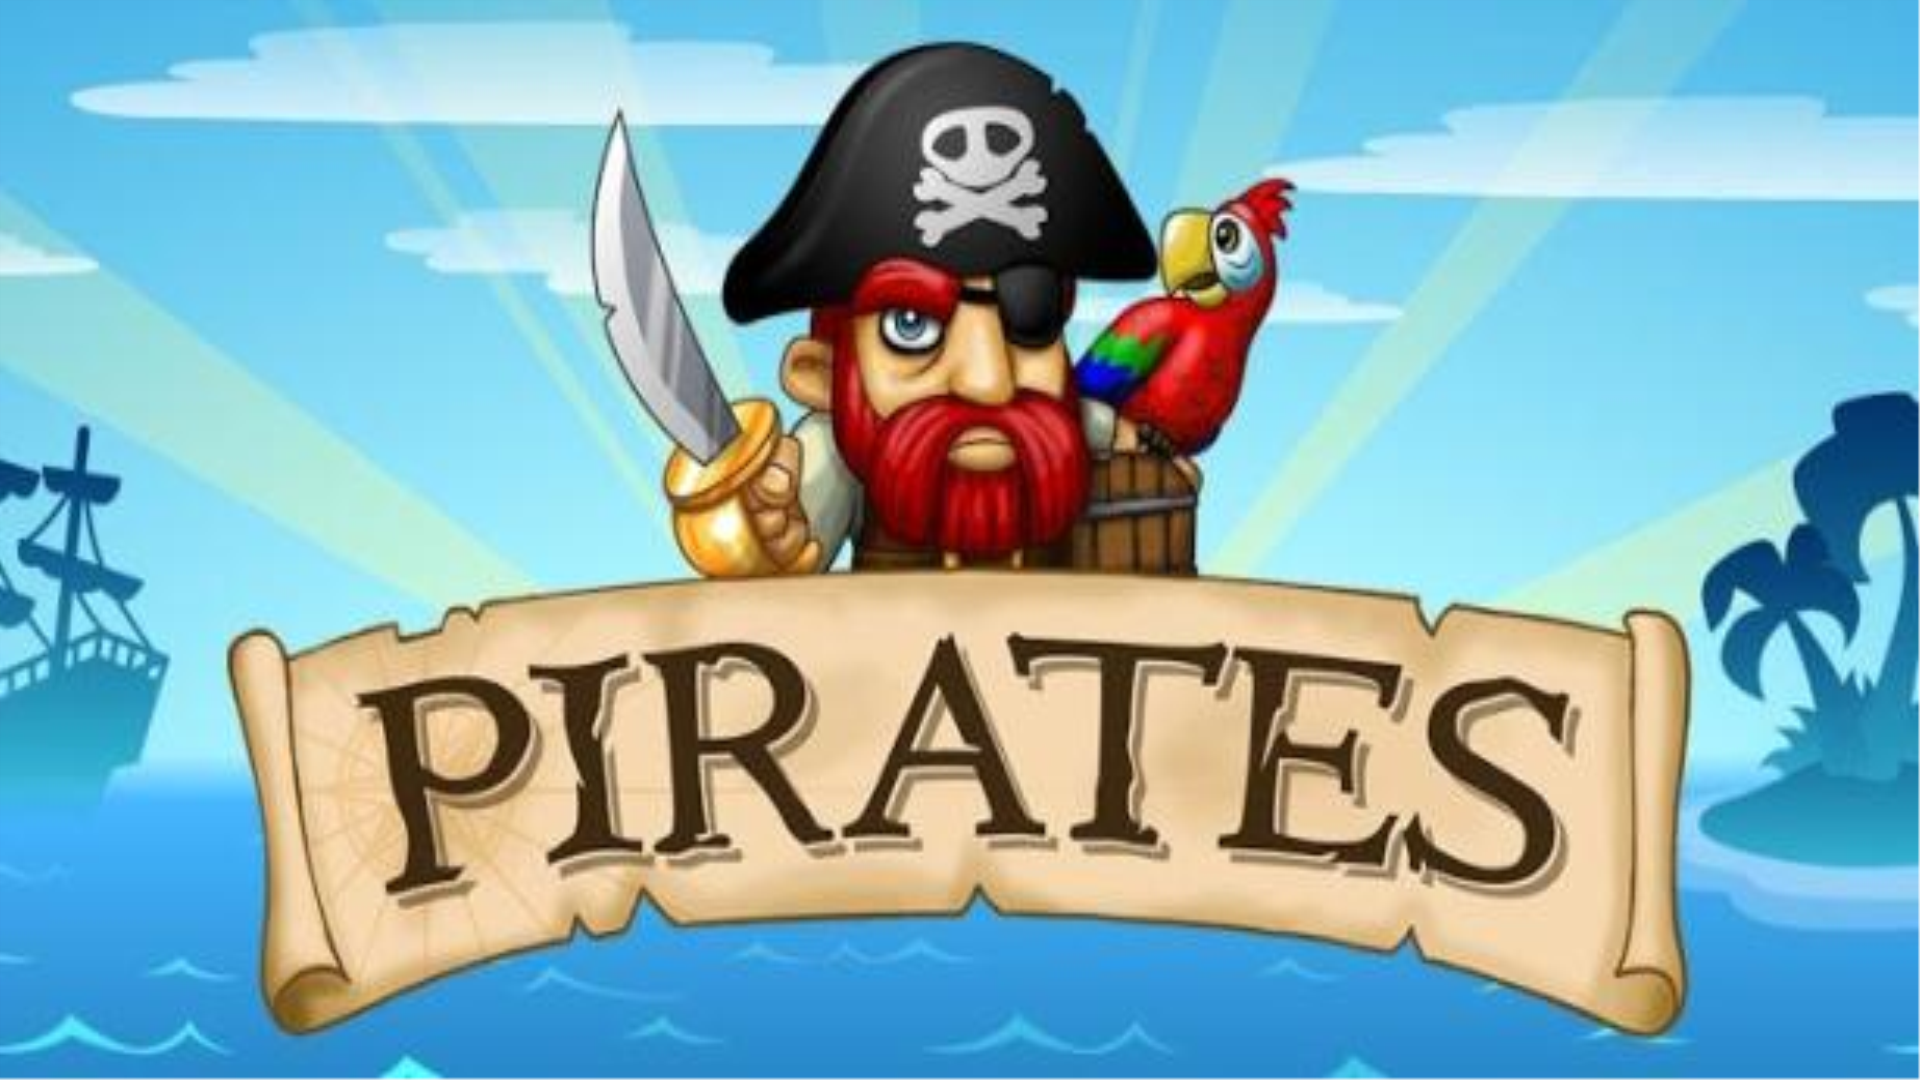 Pirates Pirates игра. Пираты на андроид. Пираты игра мобильная. Игра про пиратов на Android. Бесплатная игра про пиратов в стиме